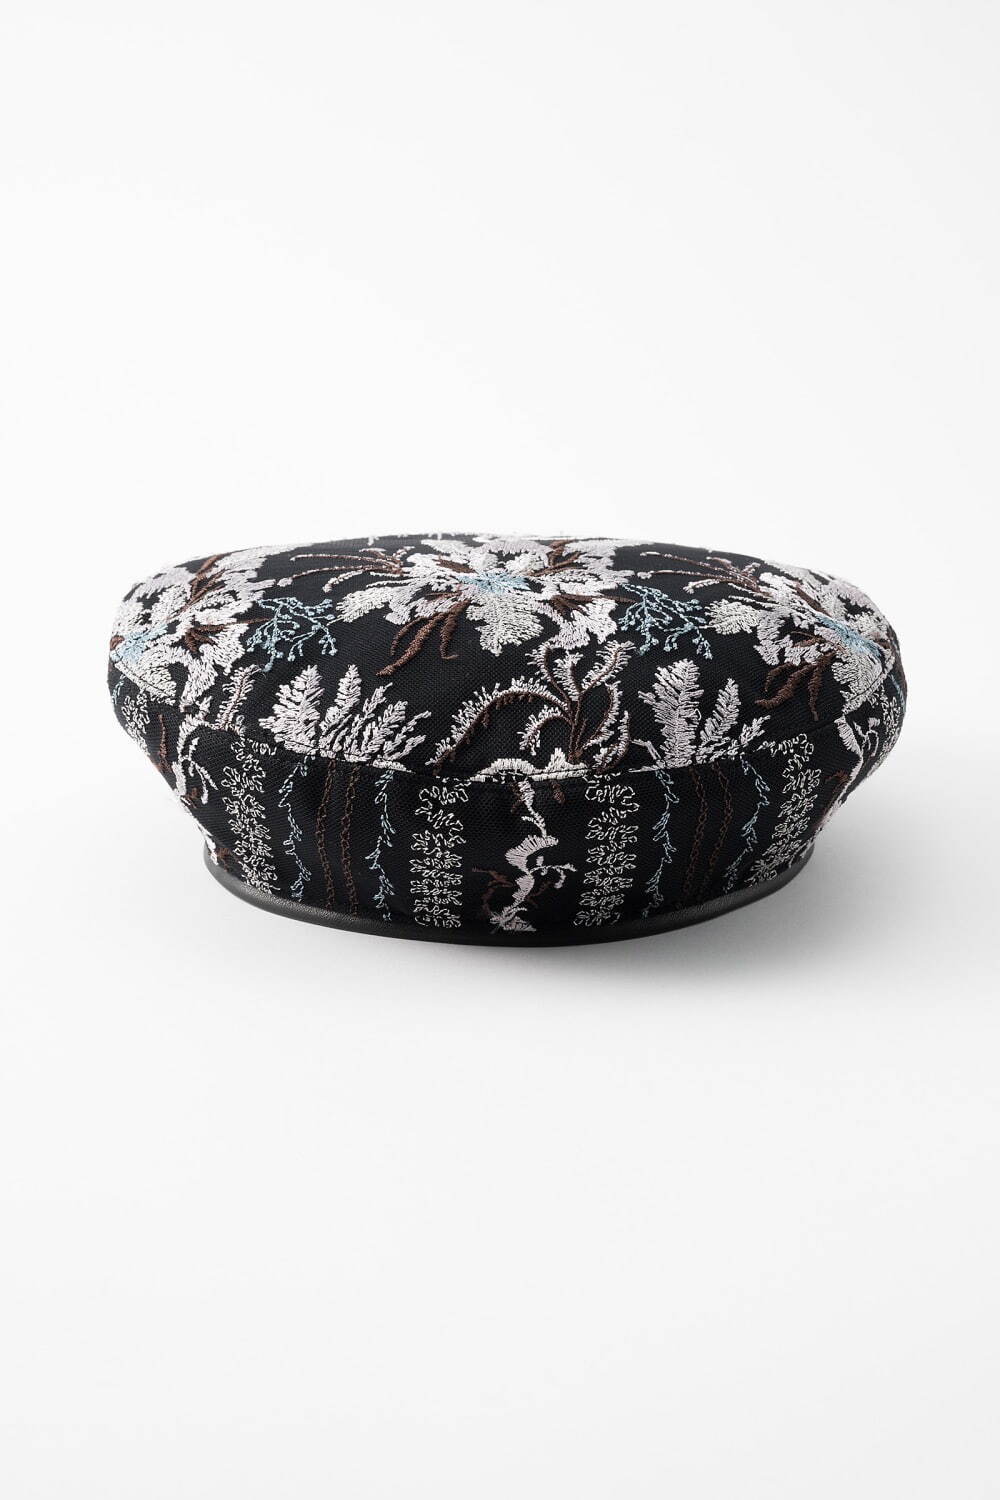 Snow flower lace beret 19,800円